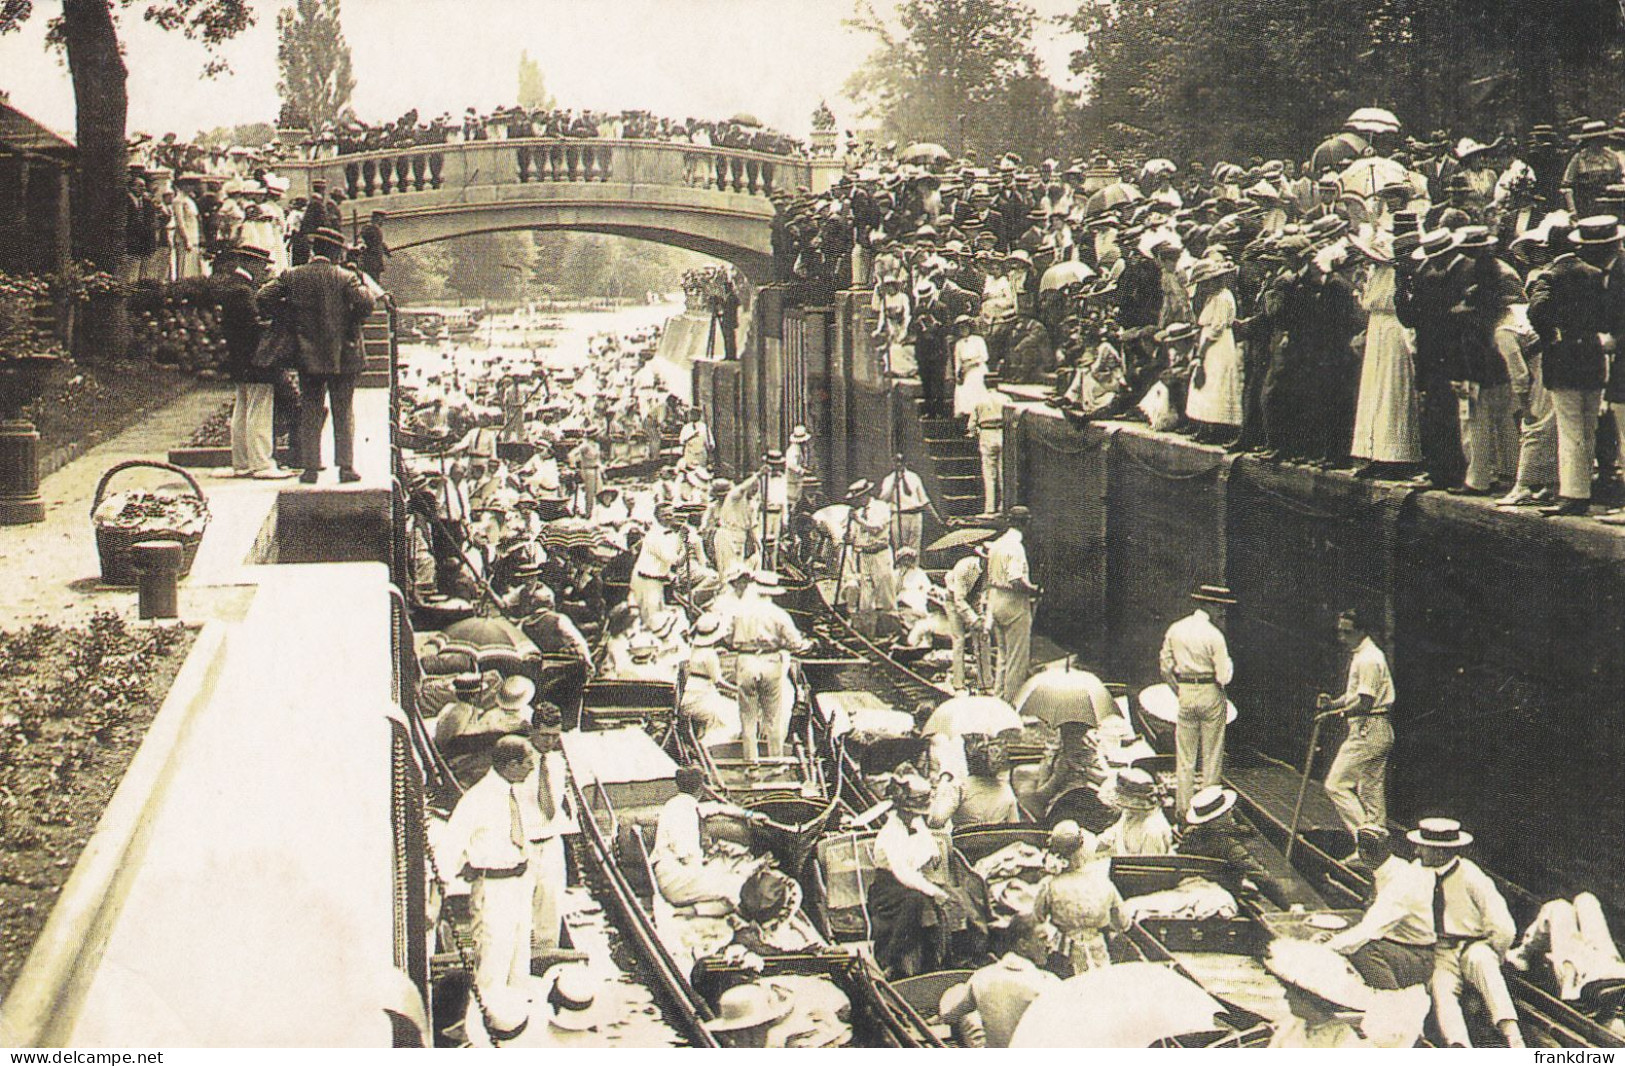 Nostalgia Postcard - Ascot Week, June 1913 - VG - Sin Clasificación